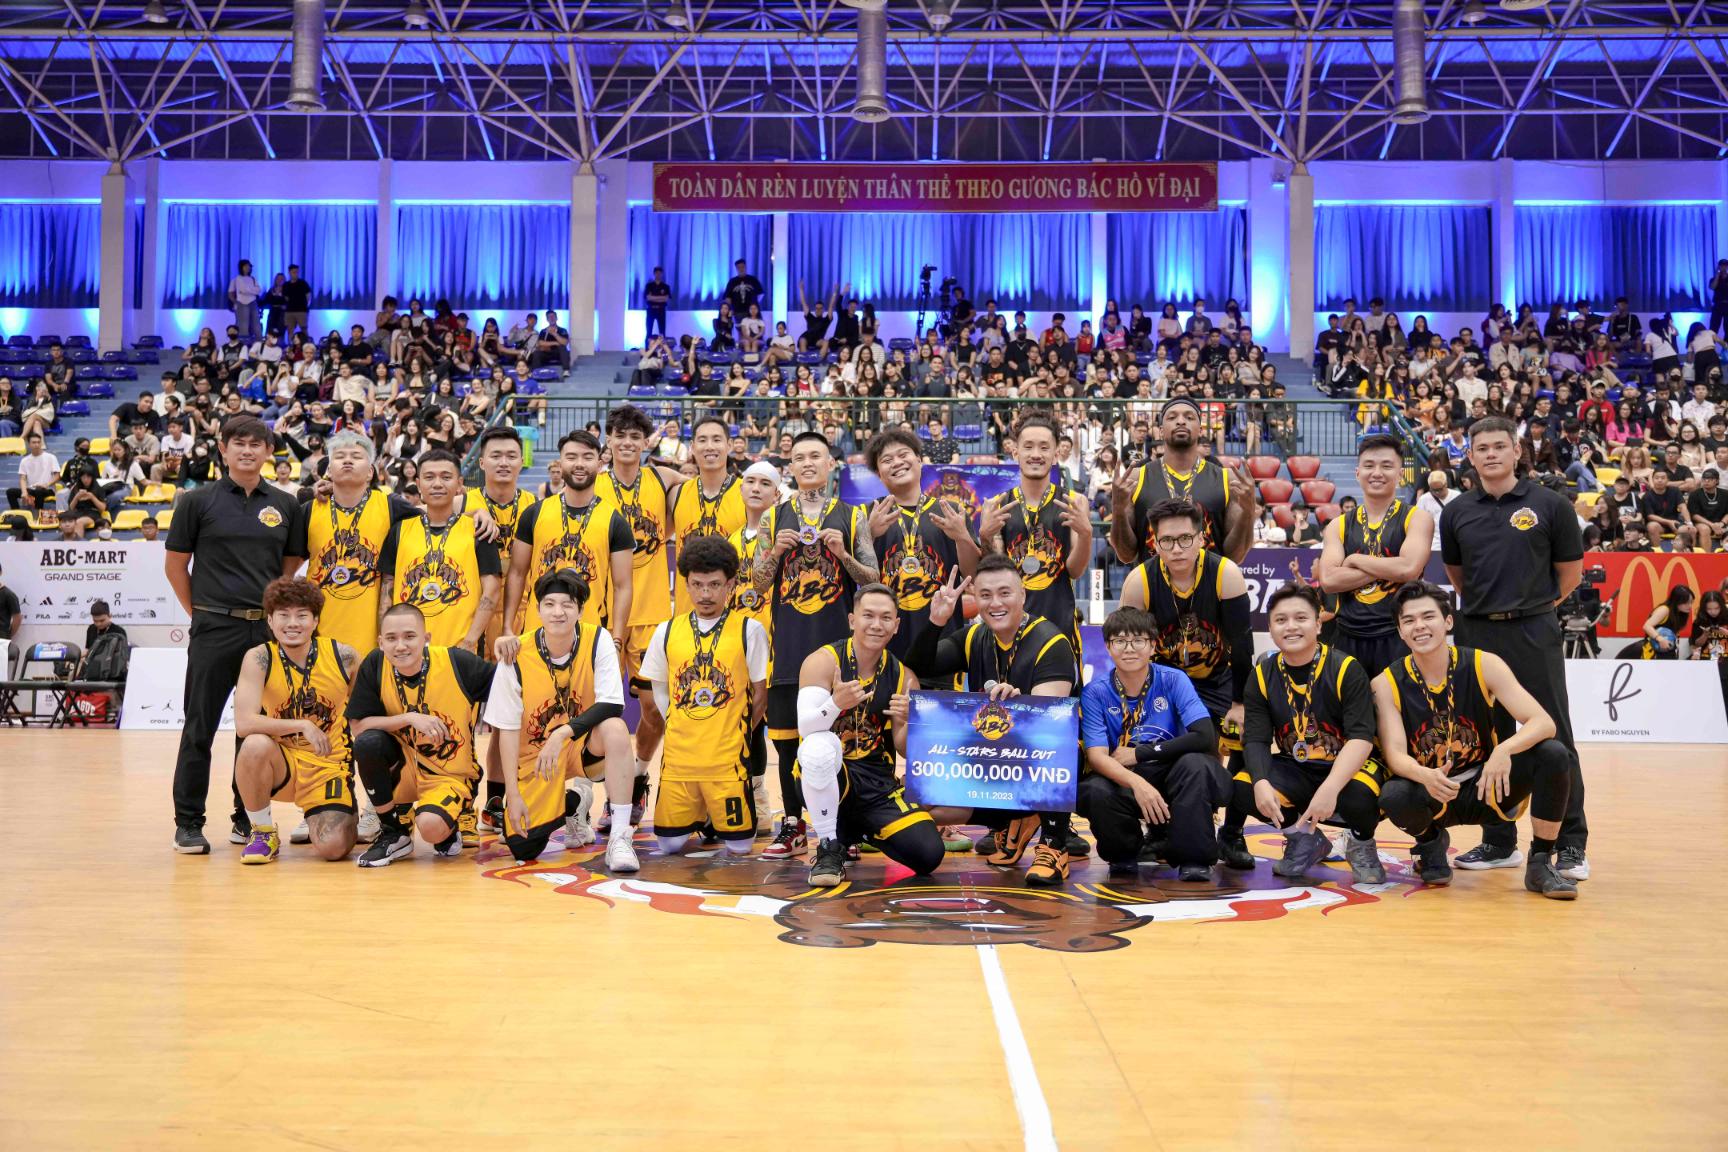 Fabo Nguyễn 6 Fabo Nguyễn tổ chức giải đấu bóng rổ, doanh thu 100% dùng làm từ thiện